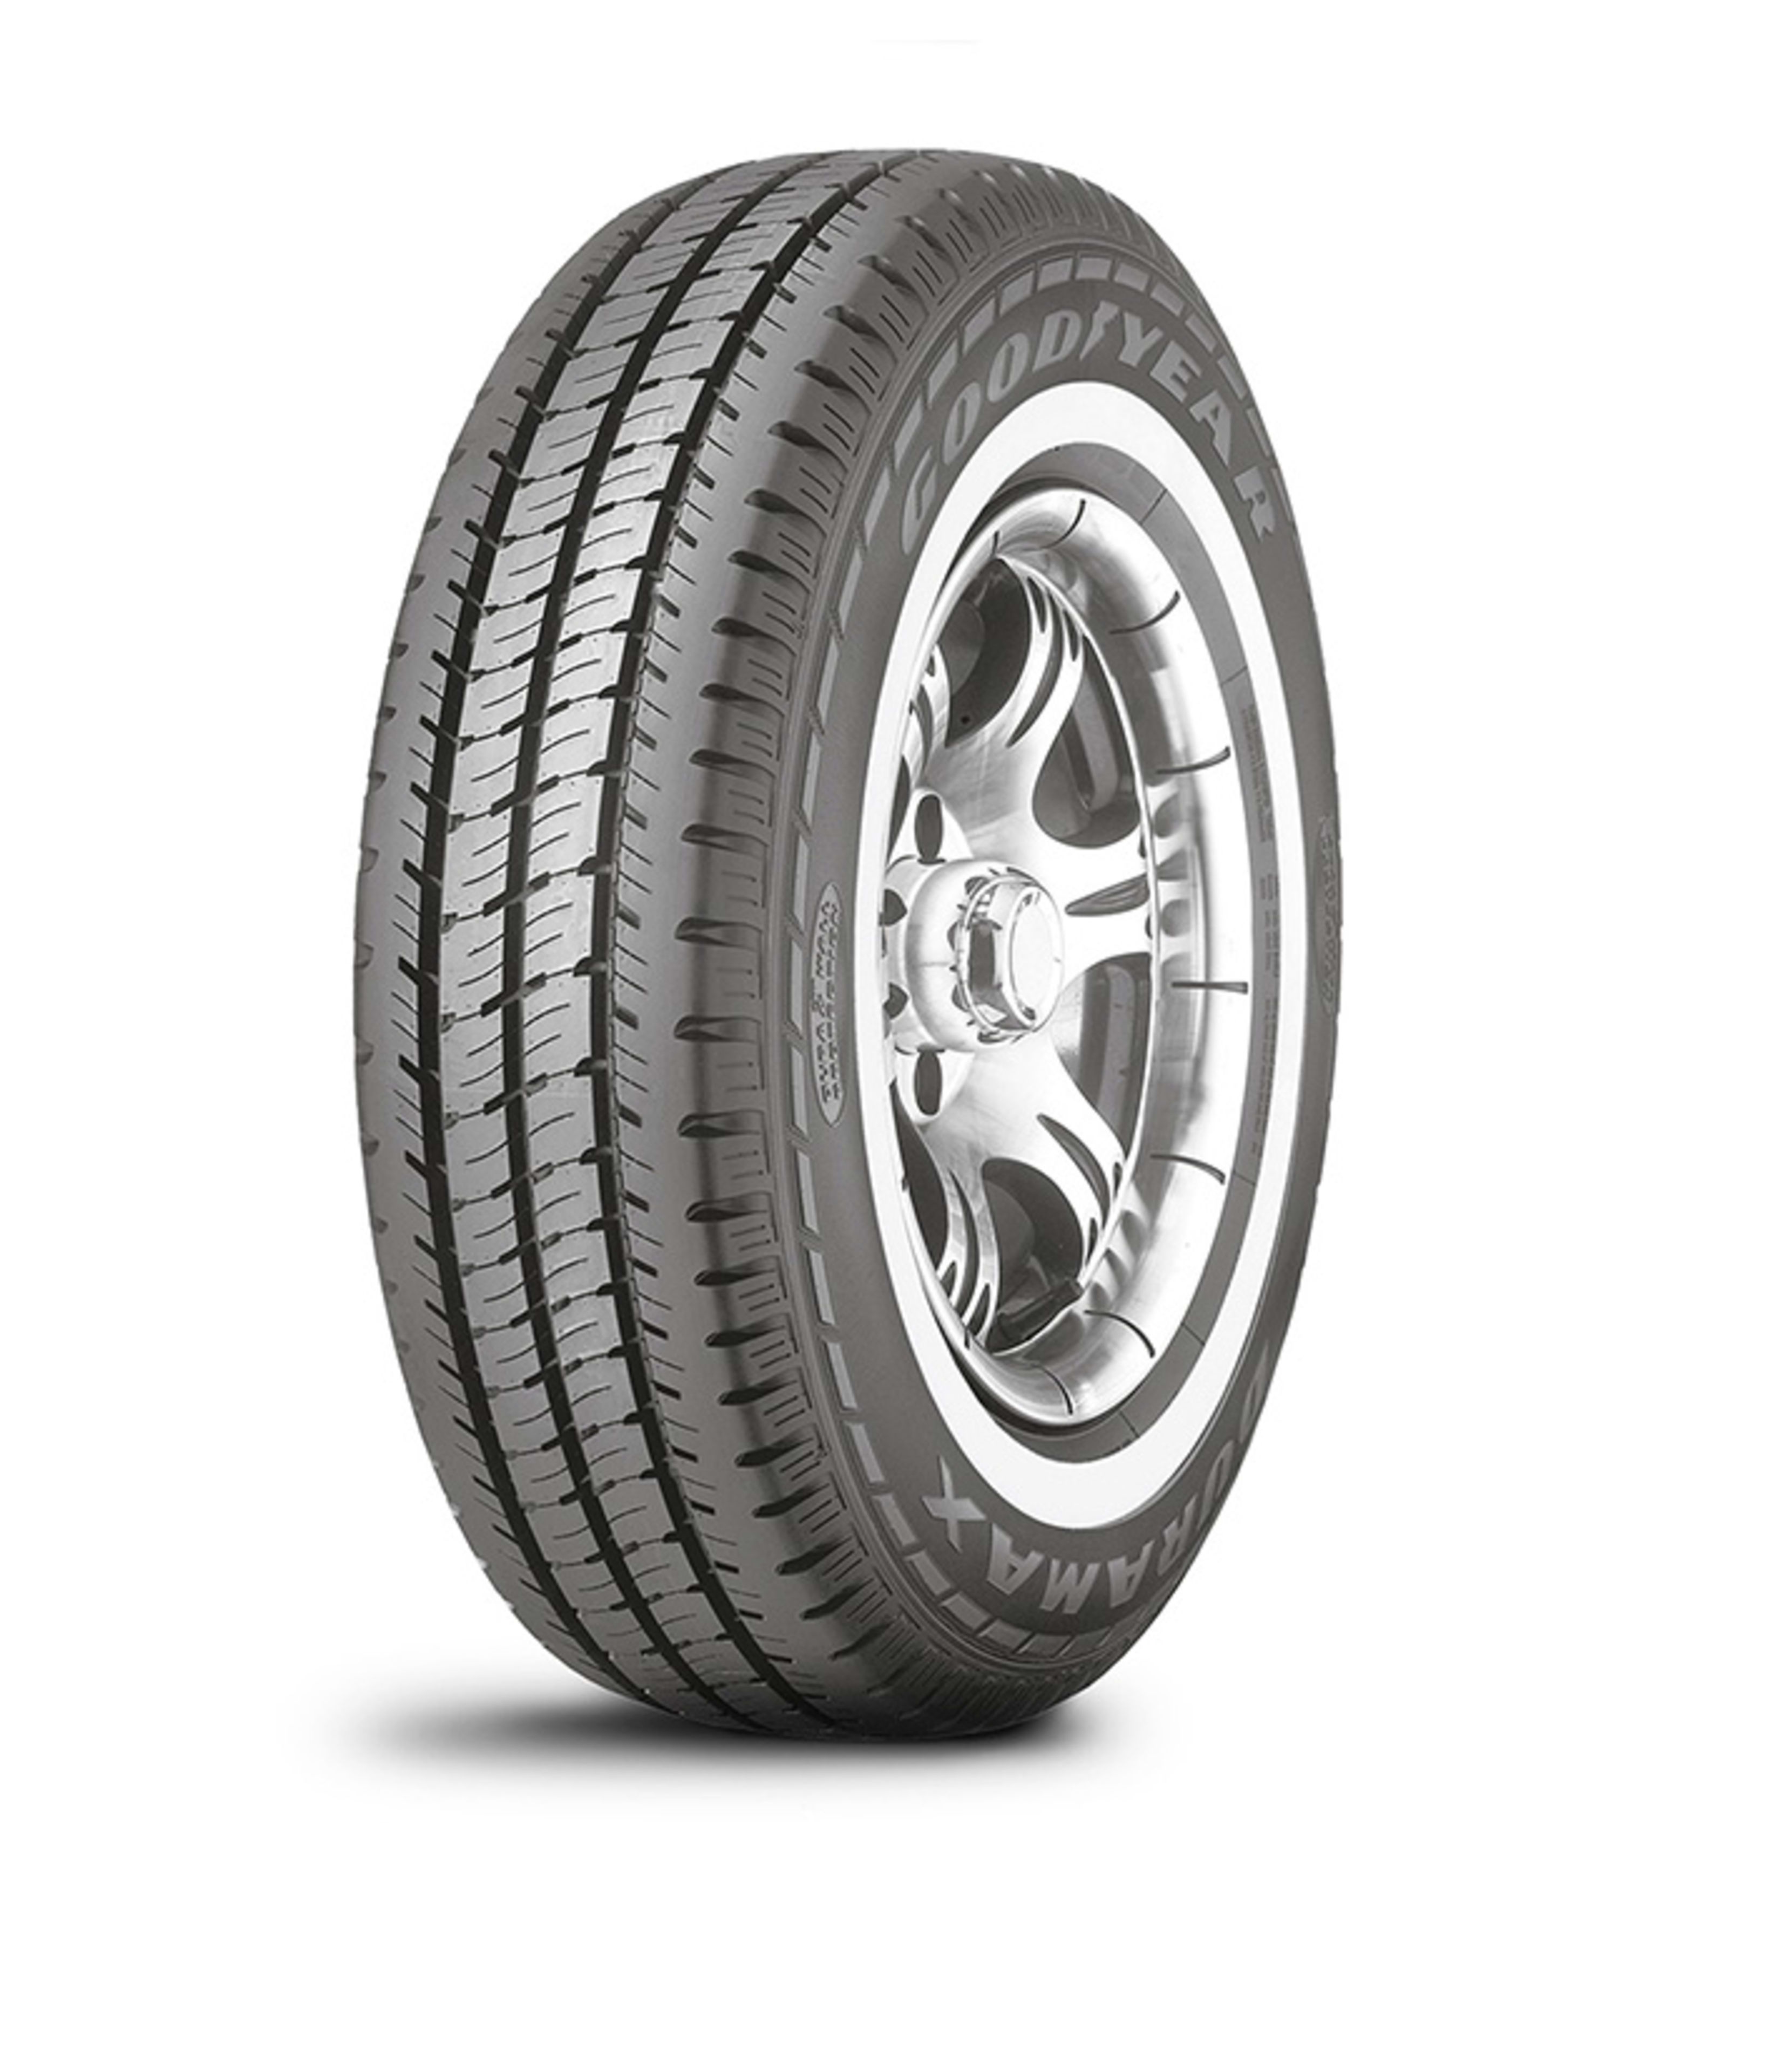 Buy Goodyear Duramax Tires Online | SimpleTire